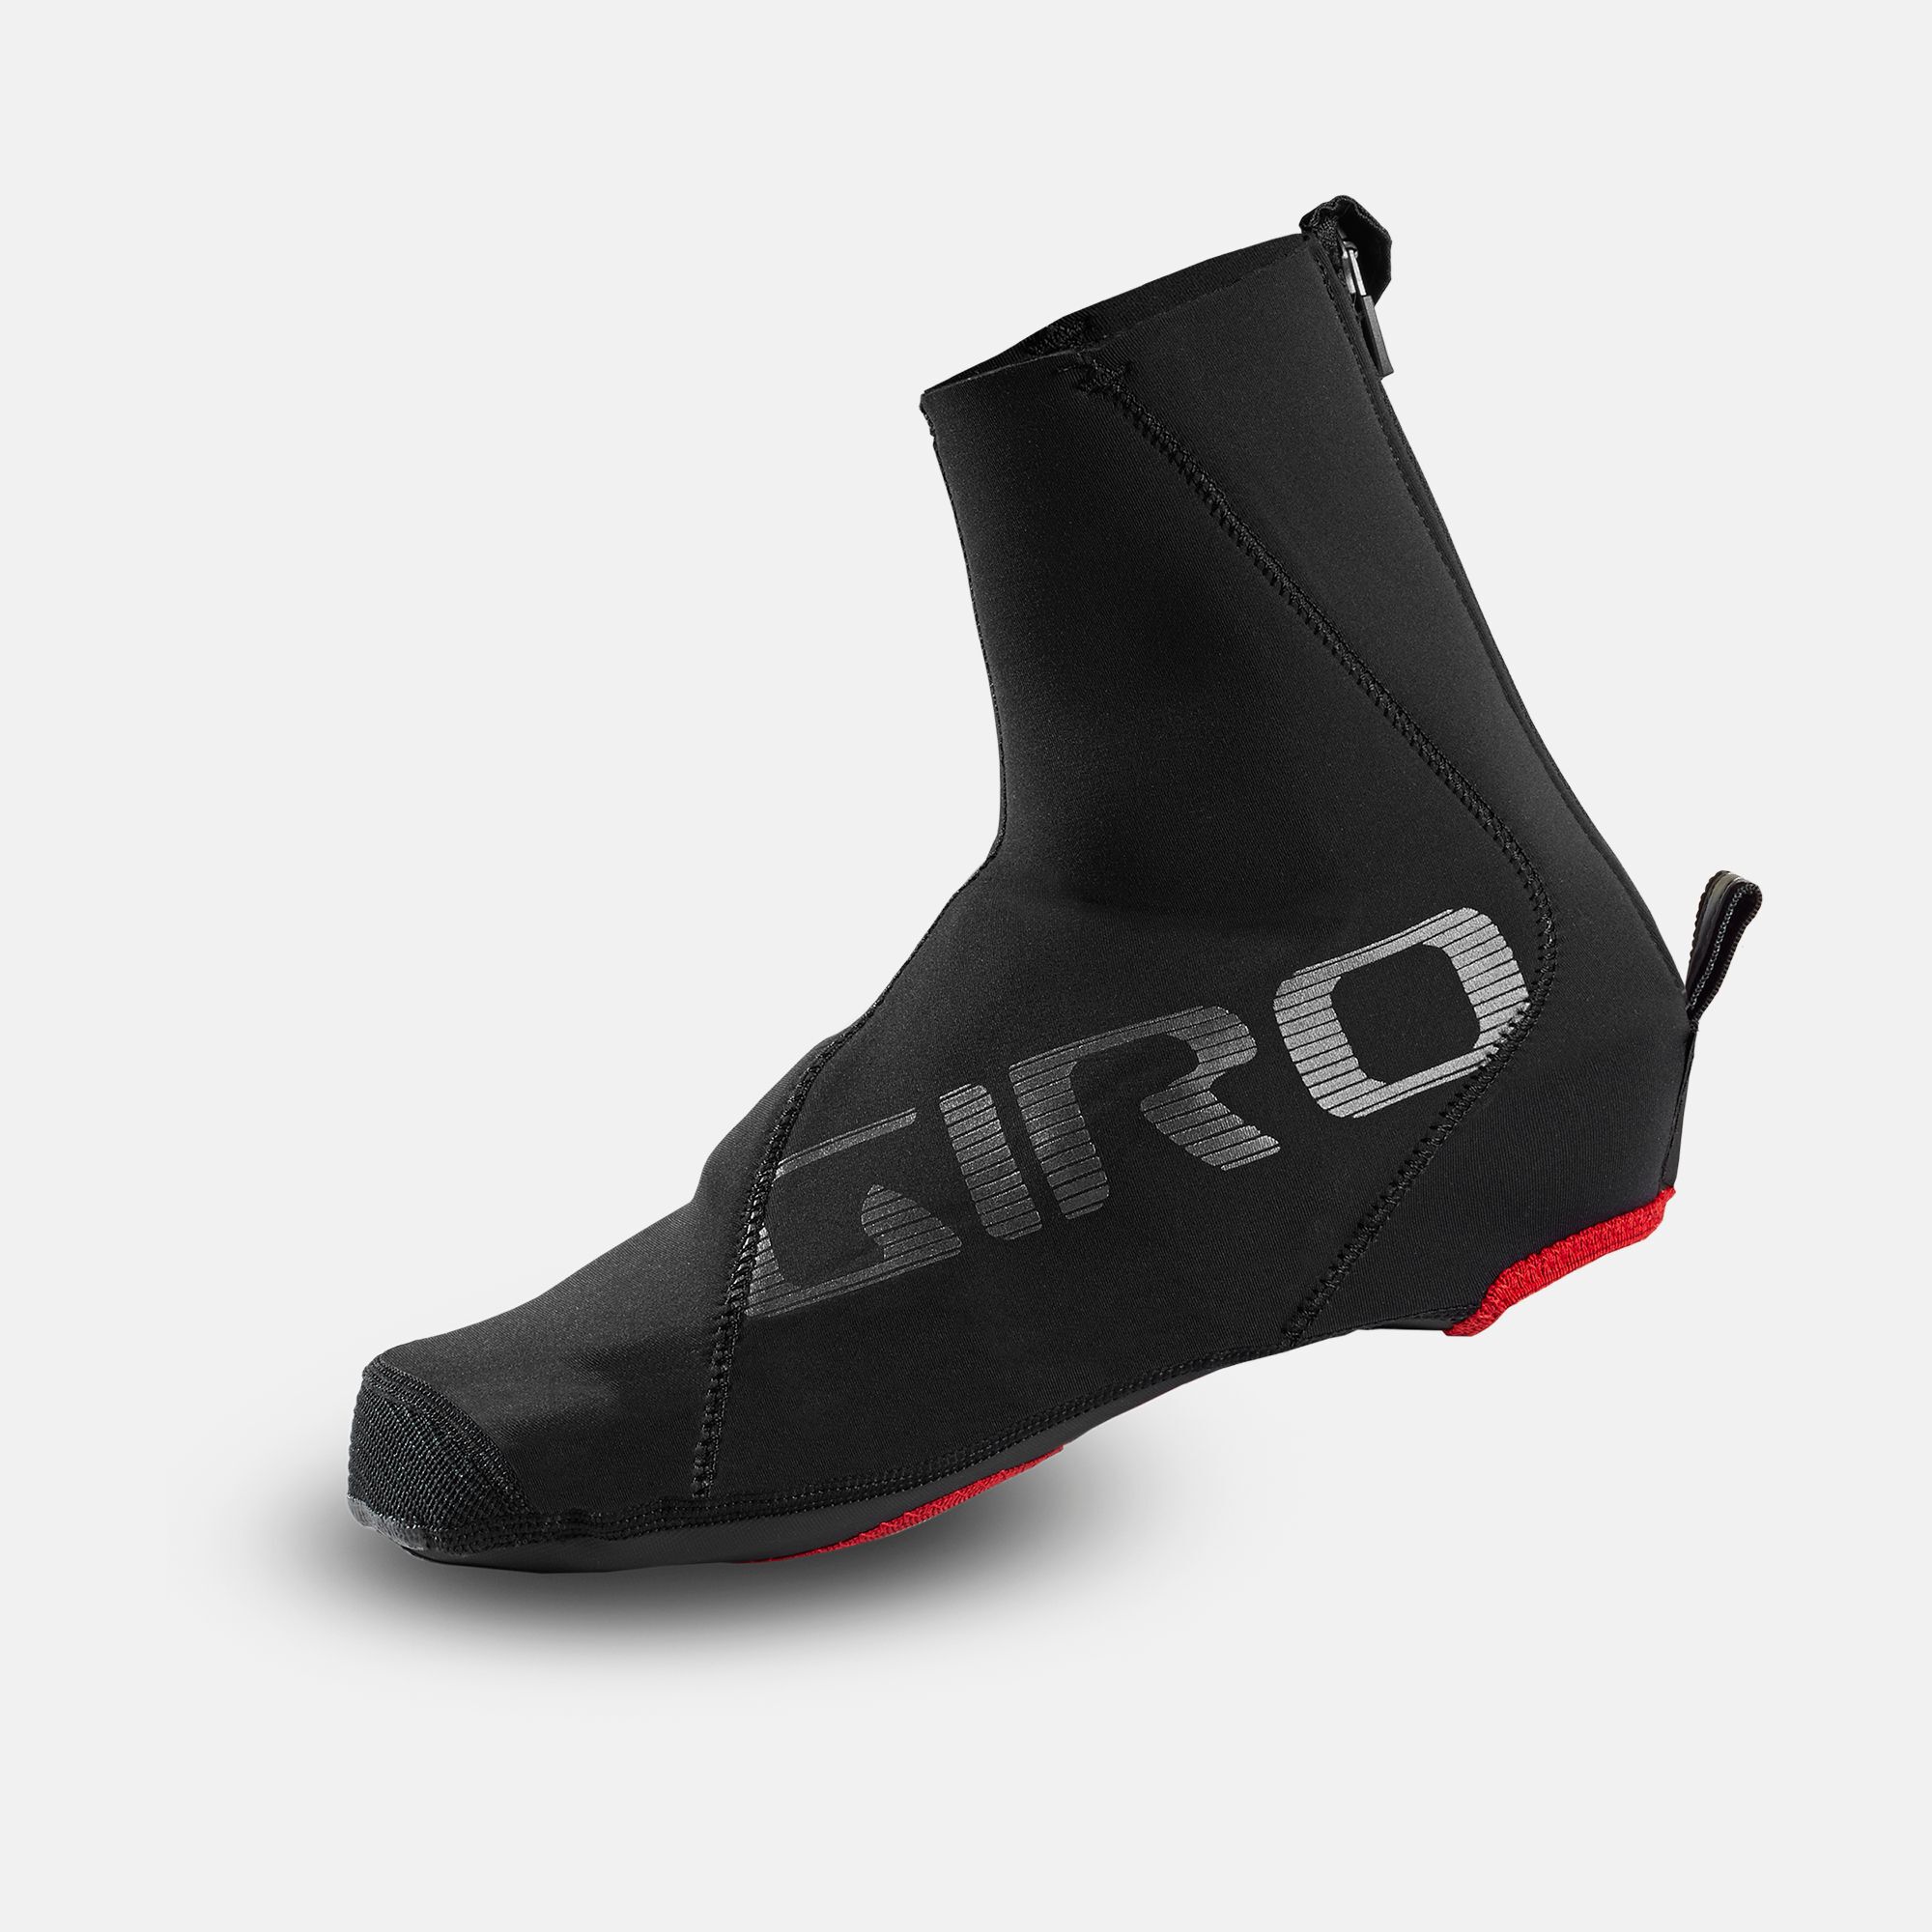 giro winter cycling shoes